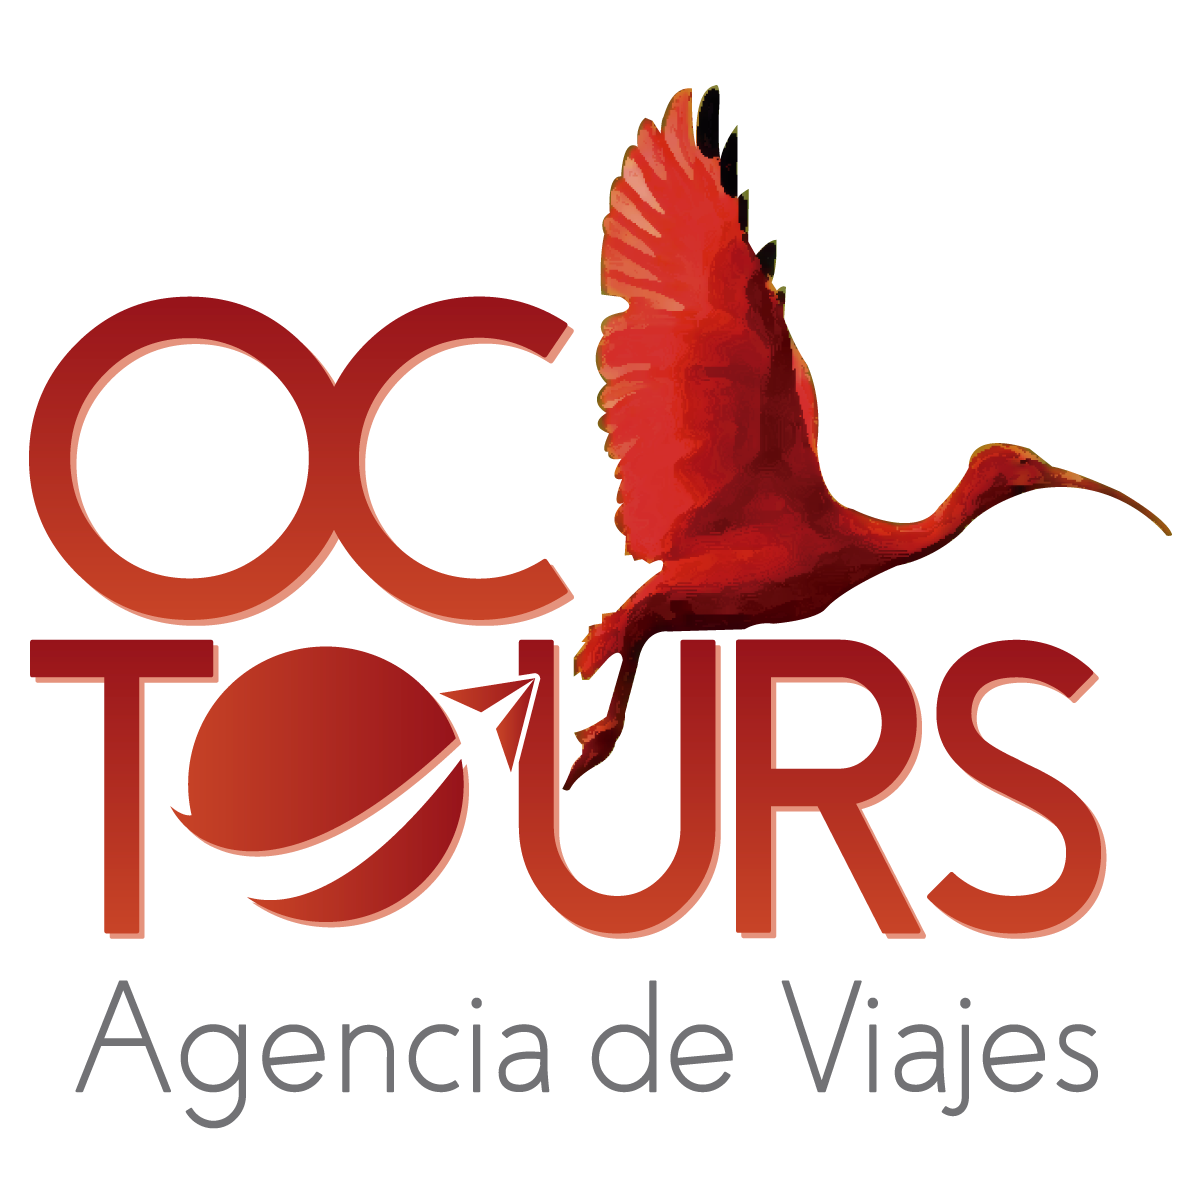 OC TOURS AGENCIA DE VIAJES